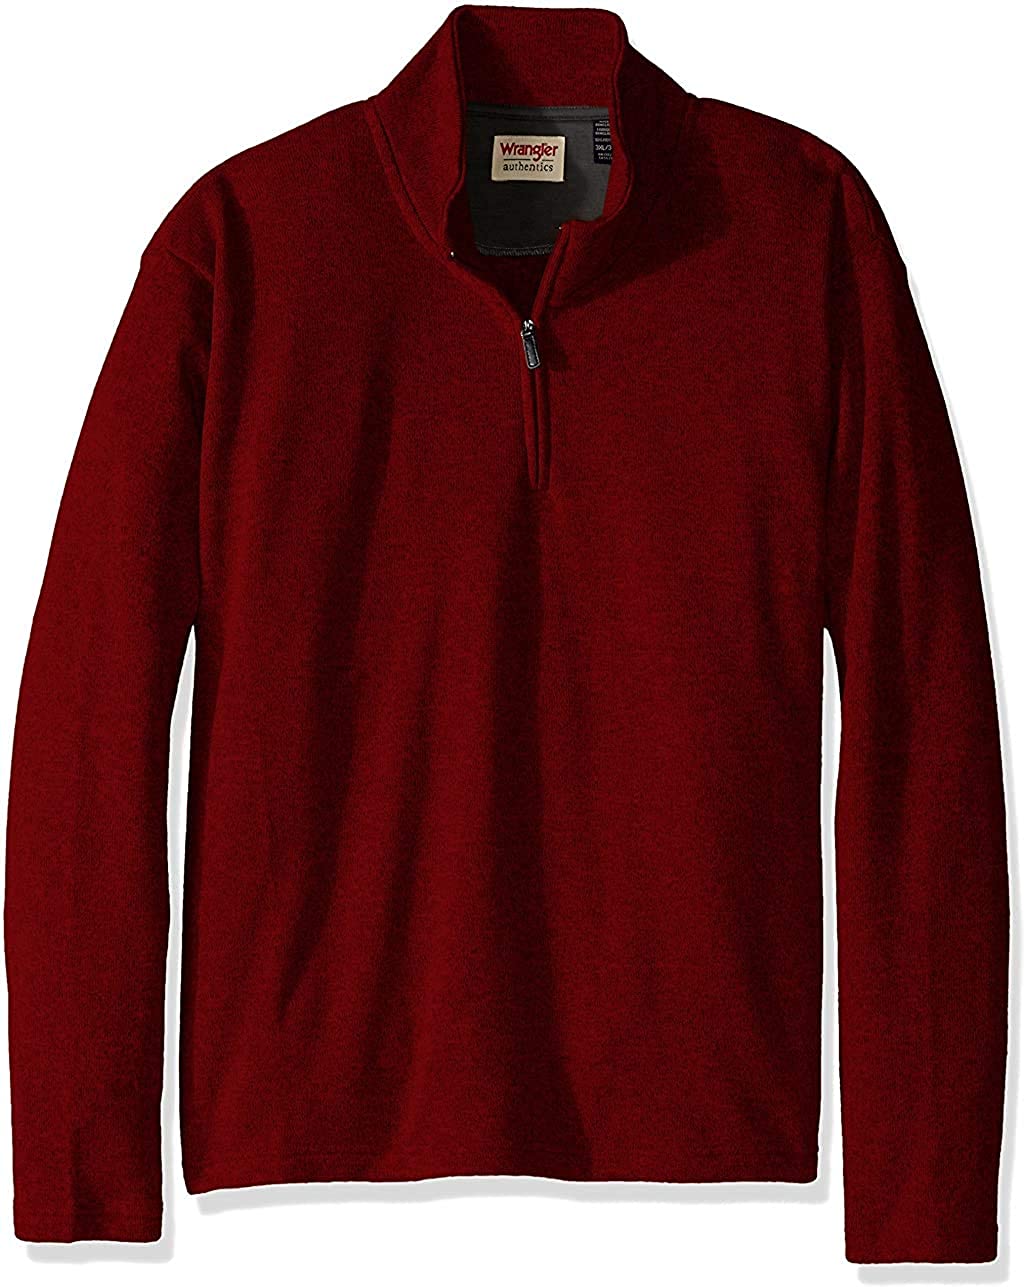 Wrangler Authentics Men’s Sweater Fleece Quarter-Zip | eBay